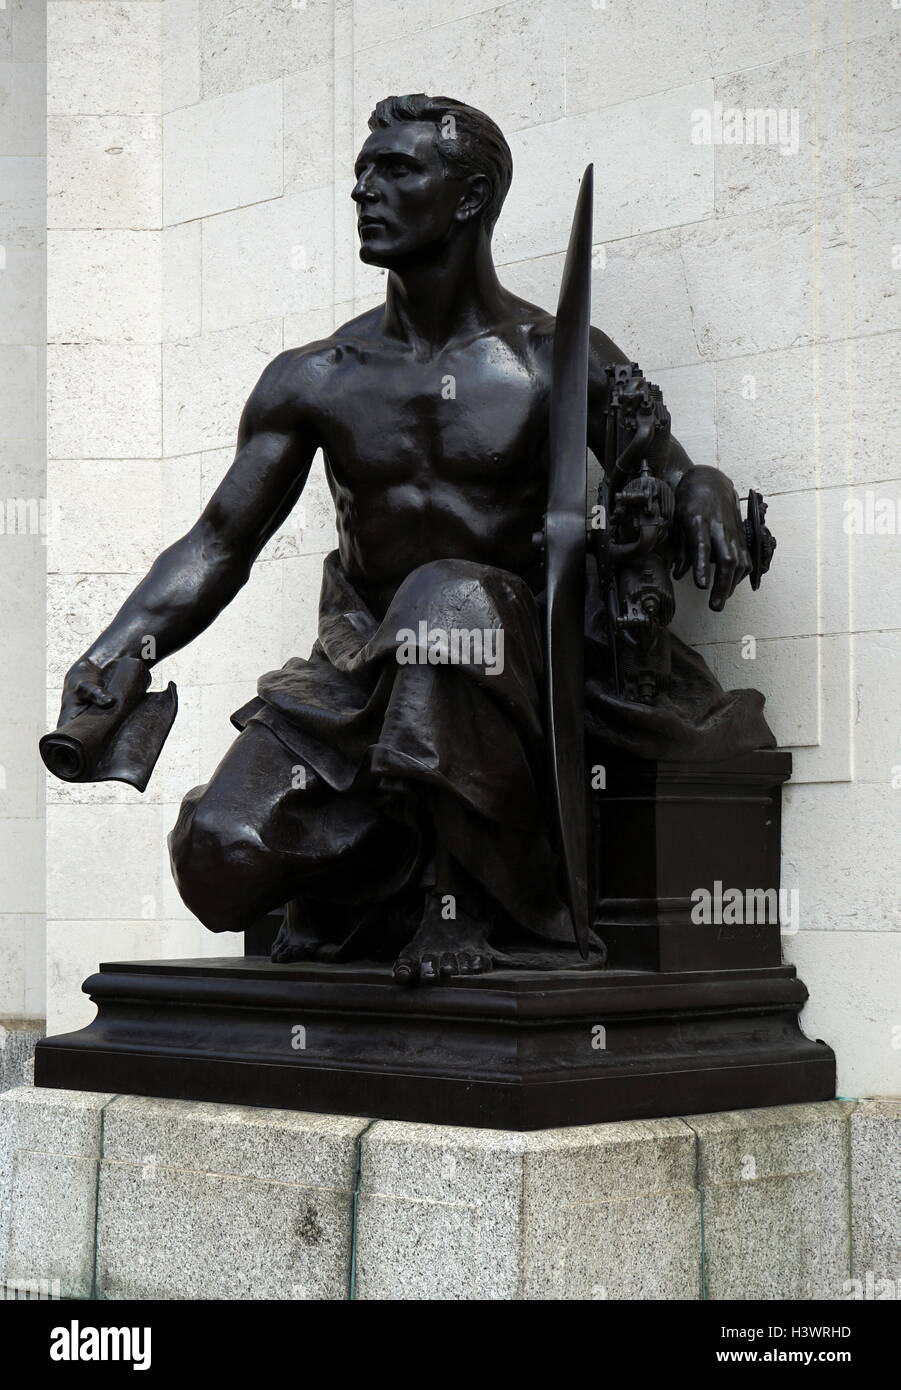 Statue von Albert Toft, 1924, außerhalb der Halle der Erinnerung, Birmingham, England. Das Leben in der Welt krieg ich Sie als Vertreter der Luftwaffe zu gedenken. Stockfoto